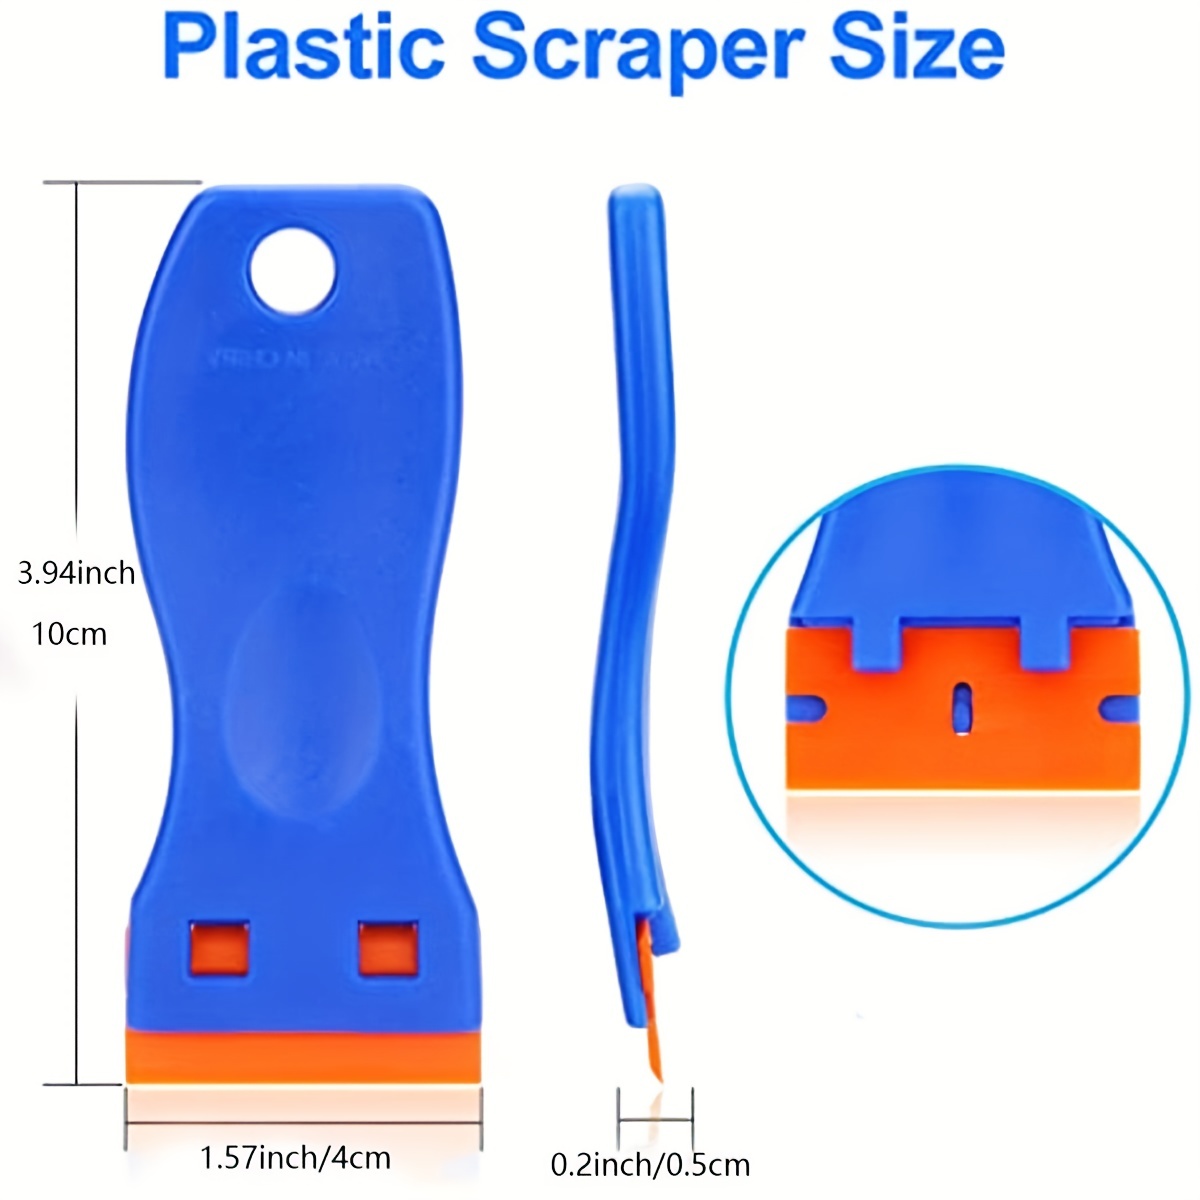 Plastic Razor Blade Scraper And Blades Remove Label Decal - Temu